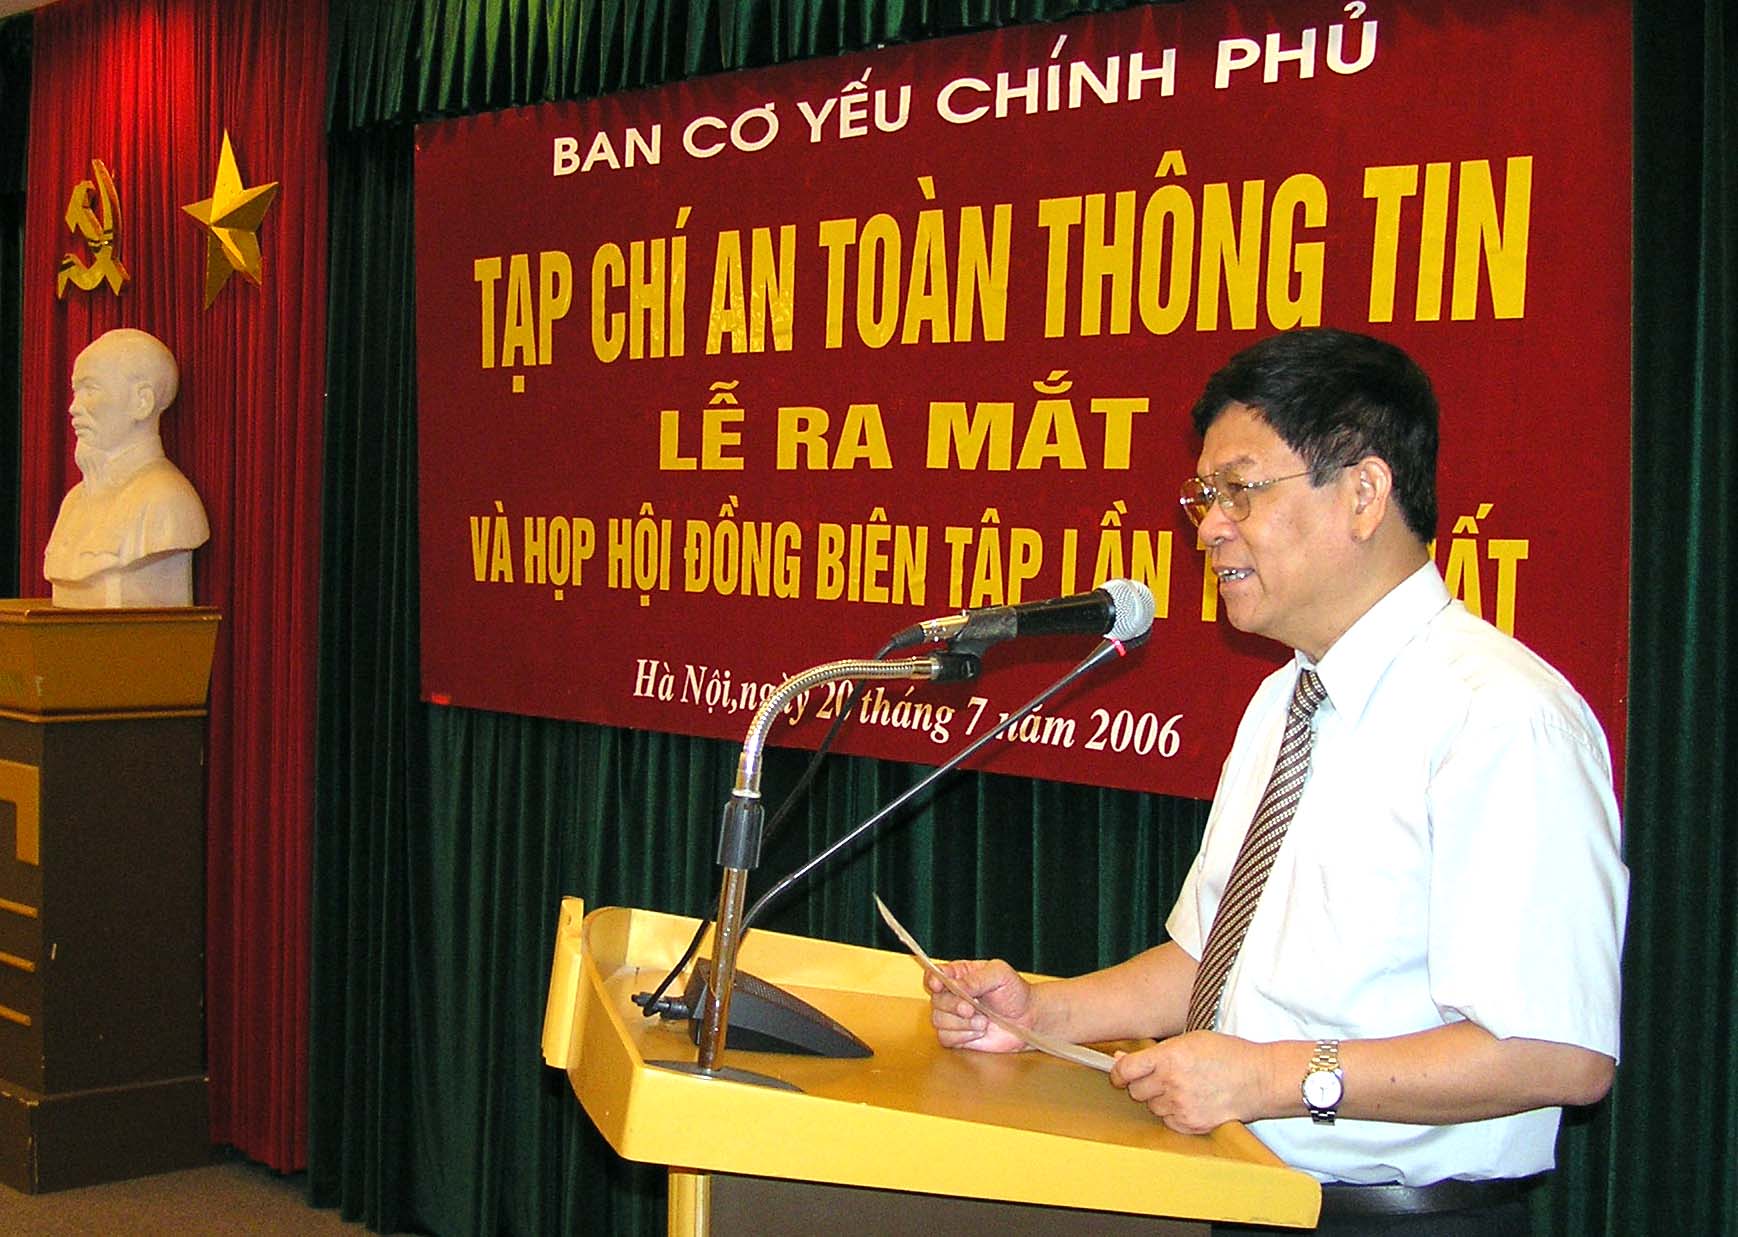 TS. Nguyễn Chiến - Trưởng ban Ban Cơ yếu Chính phủ phát biểu chúc mừng Tạp chí ATTT ra mắt